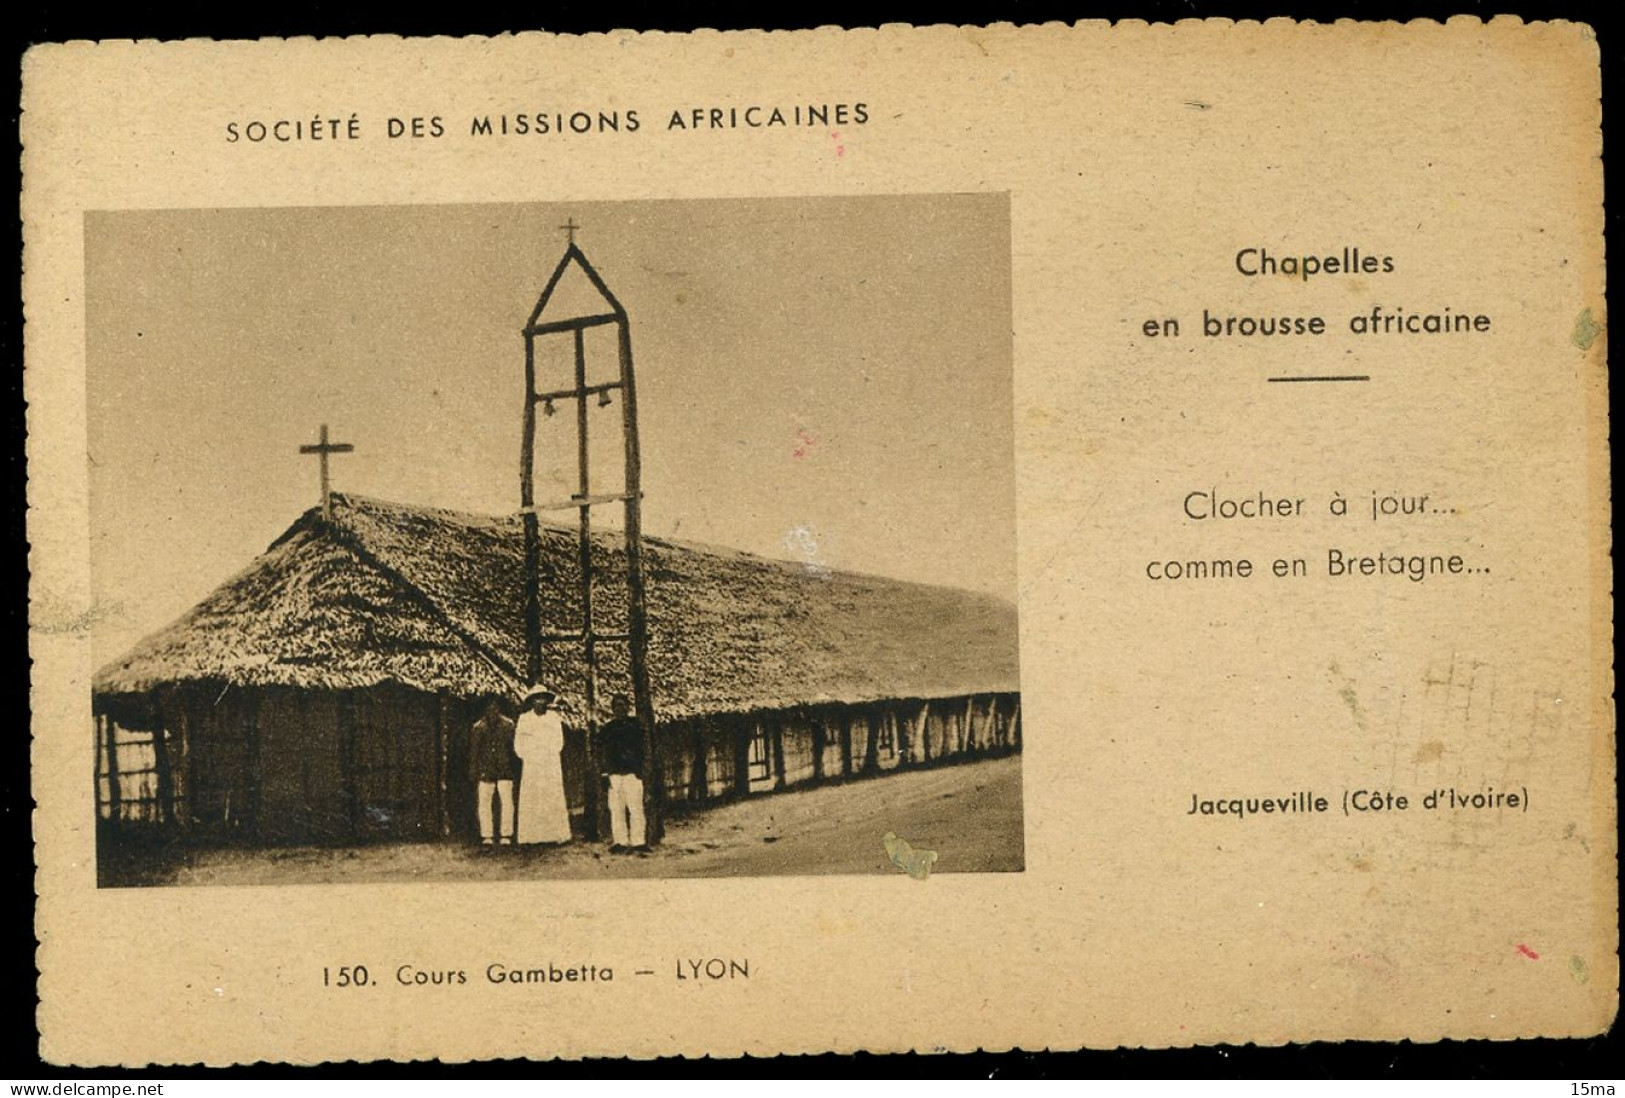 Cote D'Ivoire Jacqueville Société Des Missions Africaines Chapelles En Brousse Africaine - Costa D'Avorio